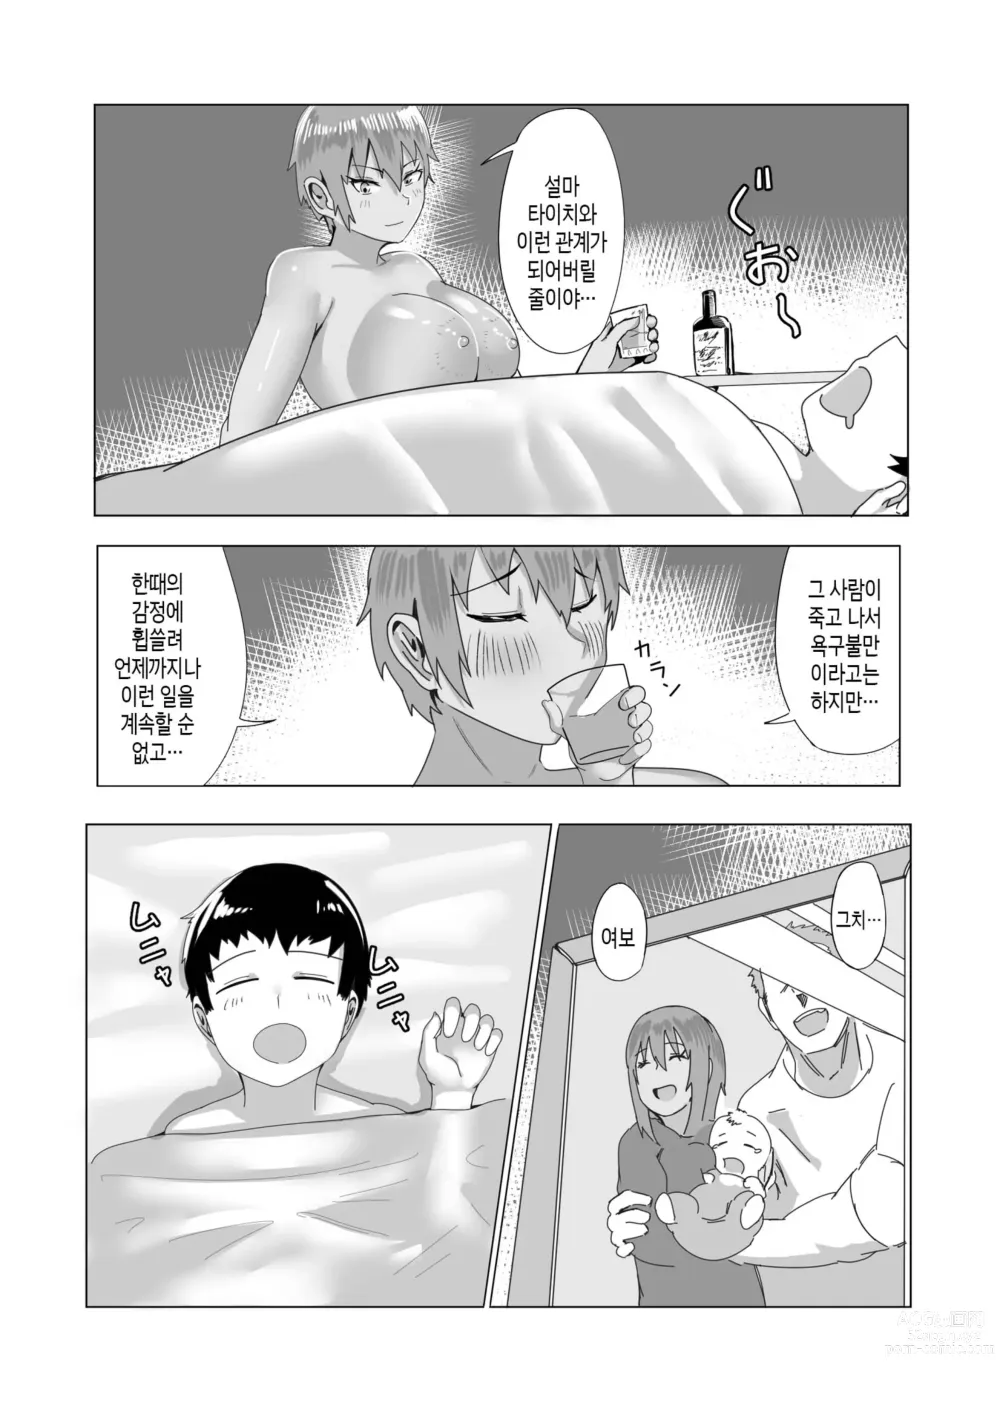 Page 36 of doujinshi 엄마의 바다로 - 나와 엄마의 사랑 이야기